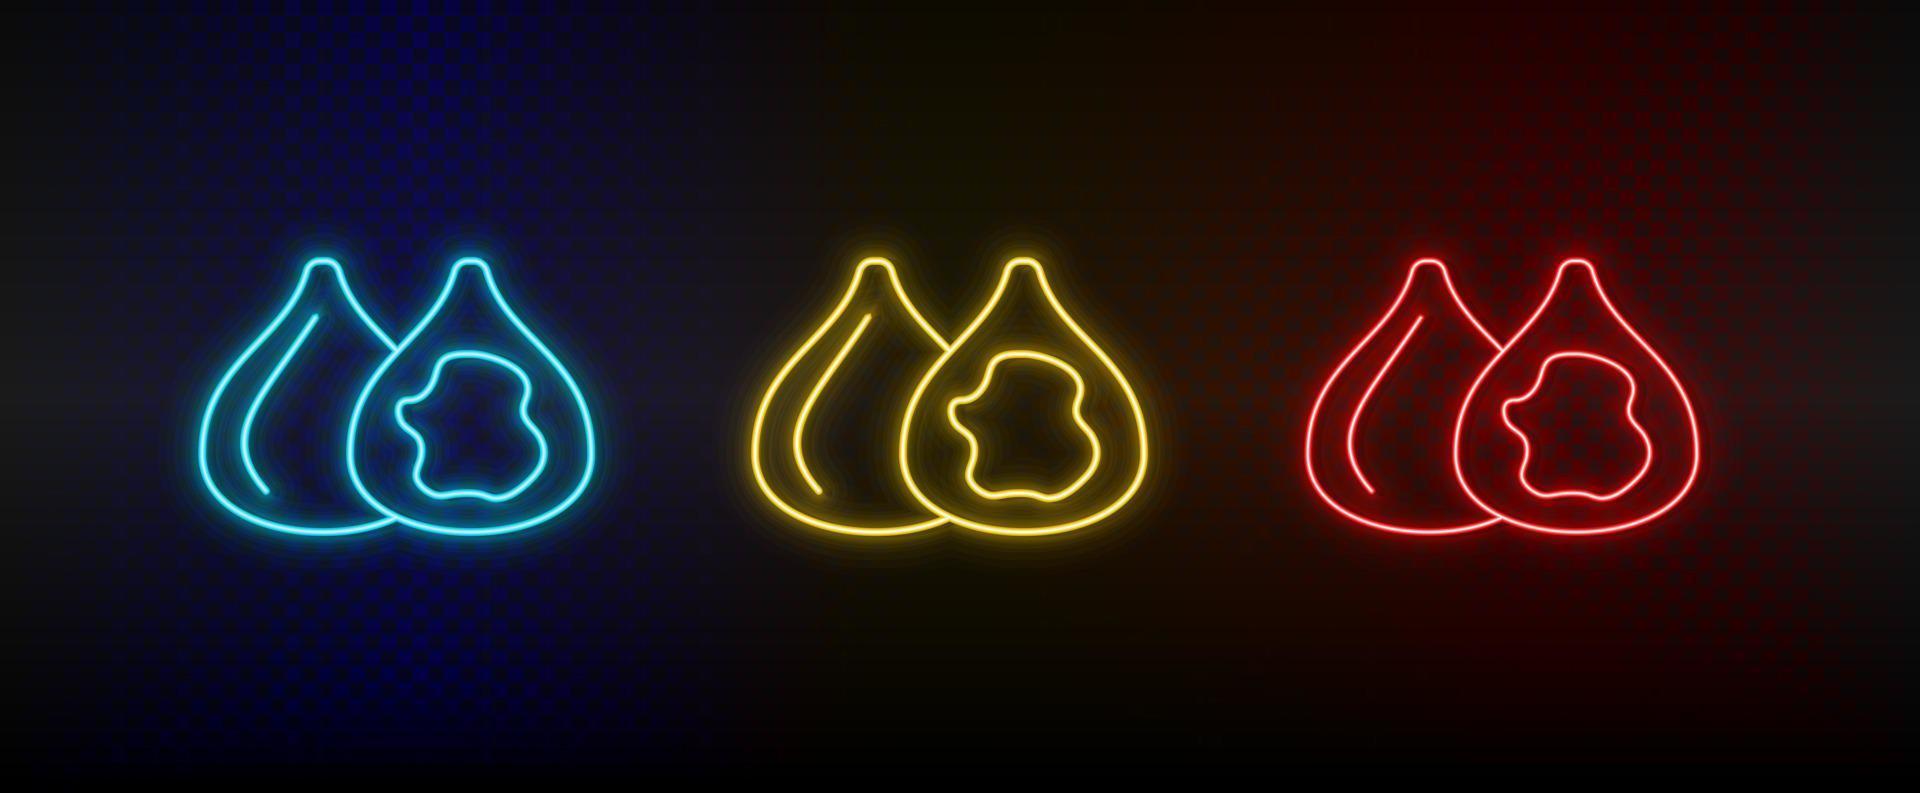 Neon- Symbol einstellen Feigen, Essen, Frucht. einstellen von Rot, Blau, Gelb Neon- Vektor Symbol auf dunkel Hintergrund